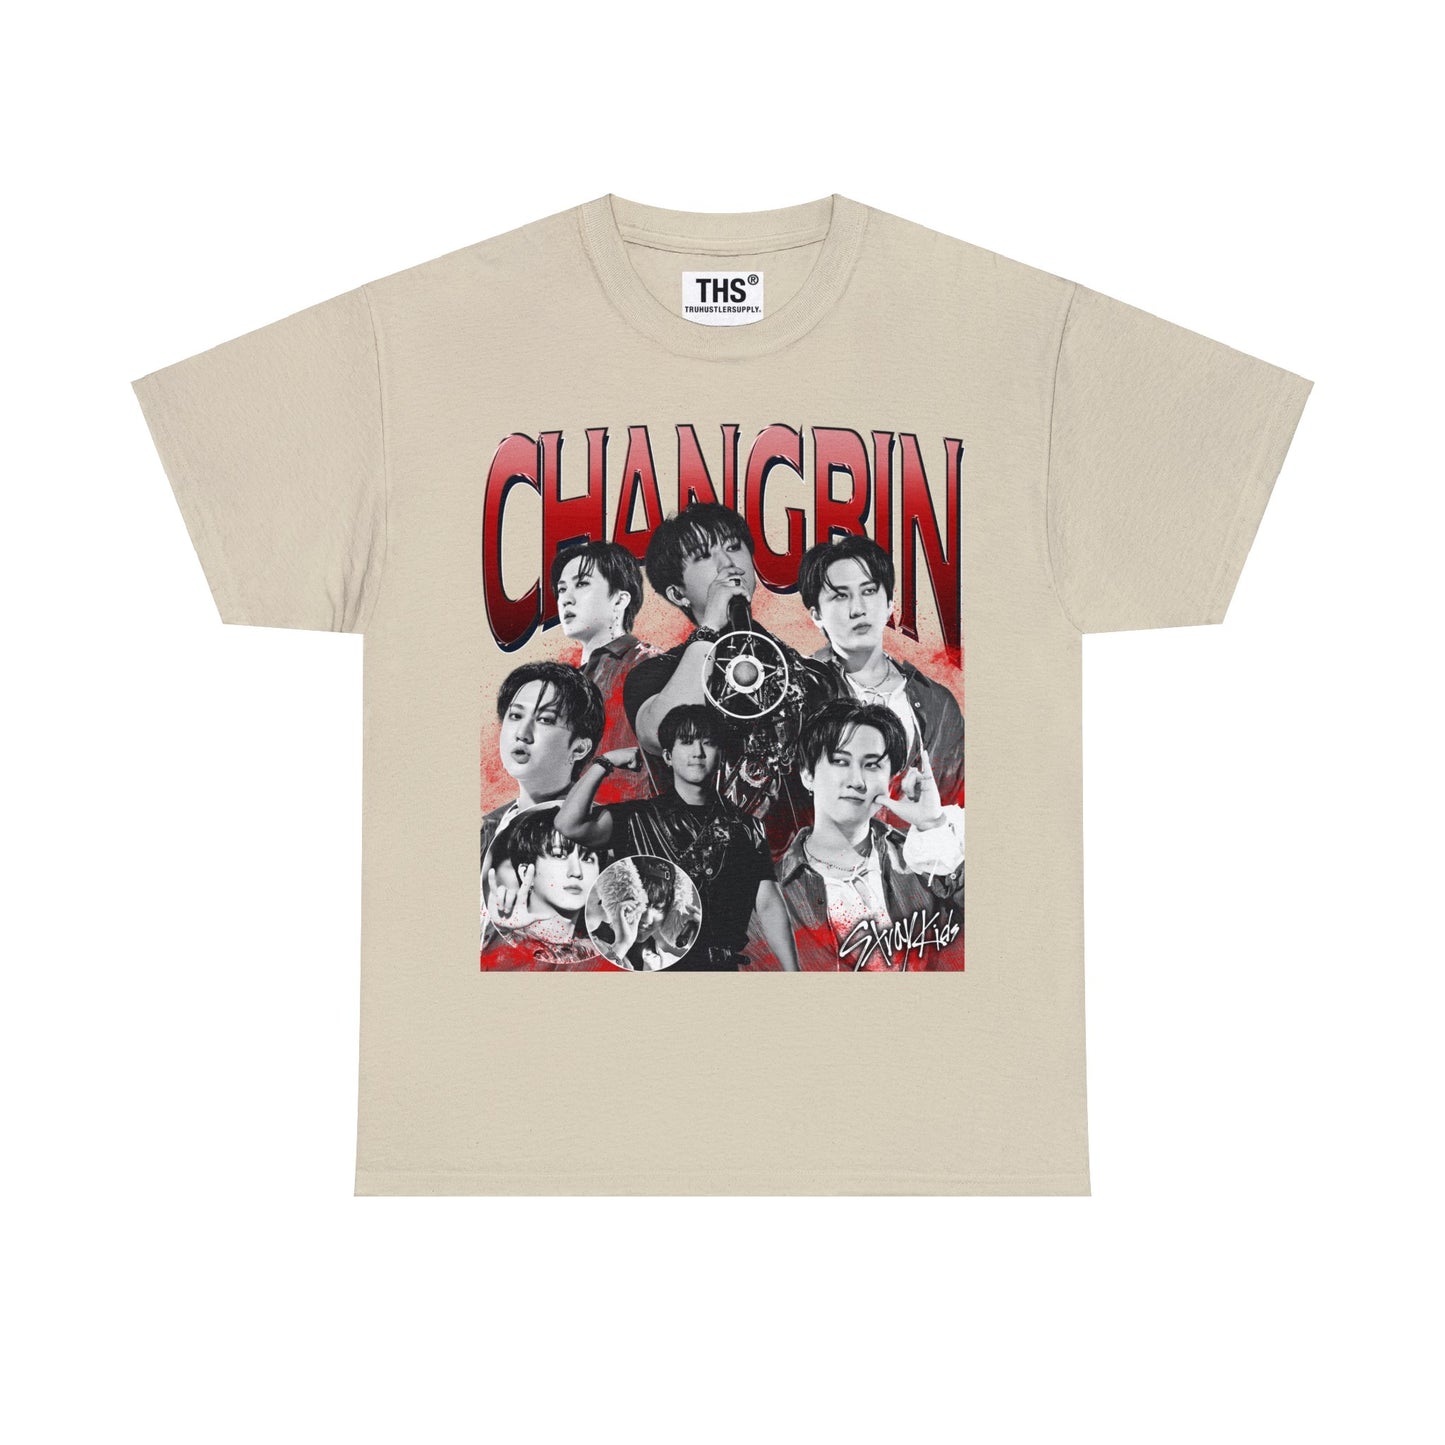 Changbin SKZ Bootleg Graphic T Shirt